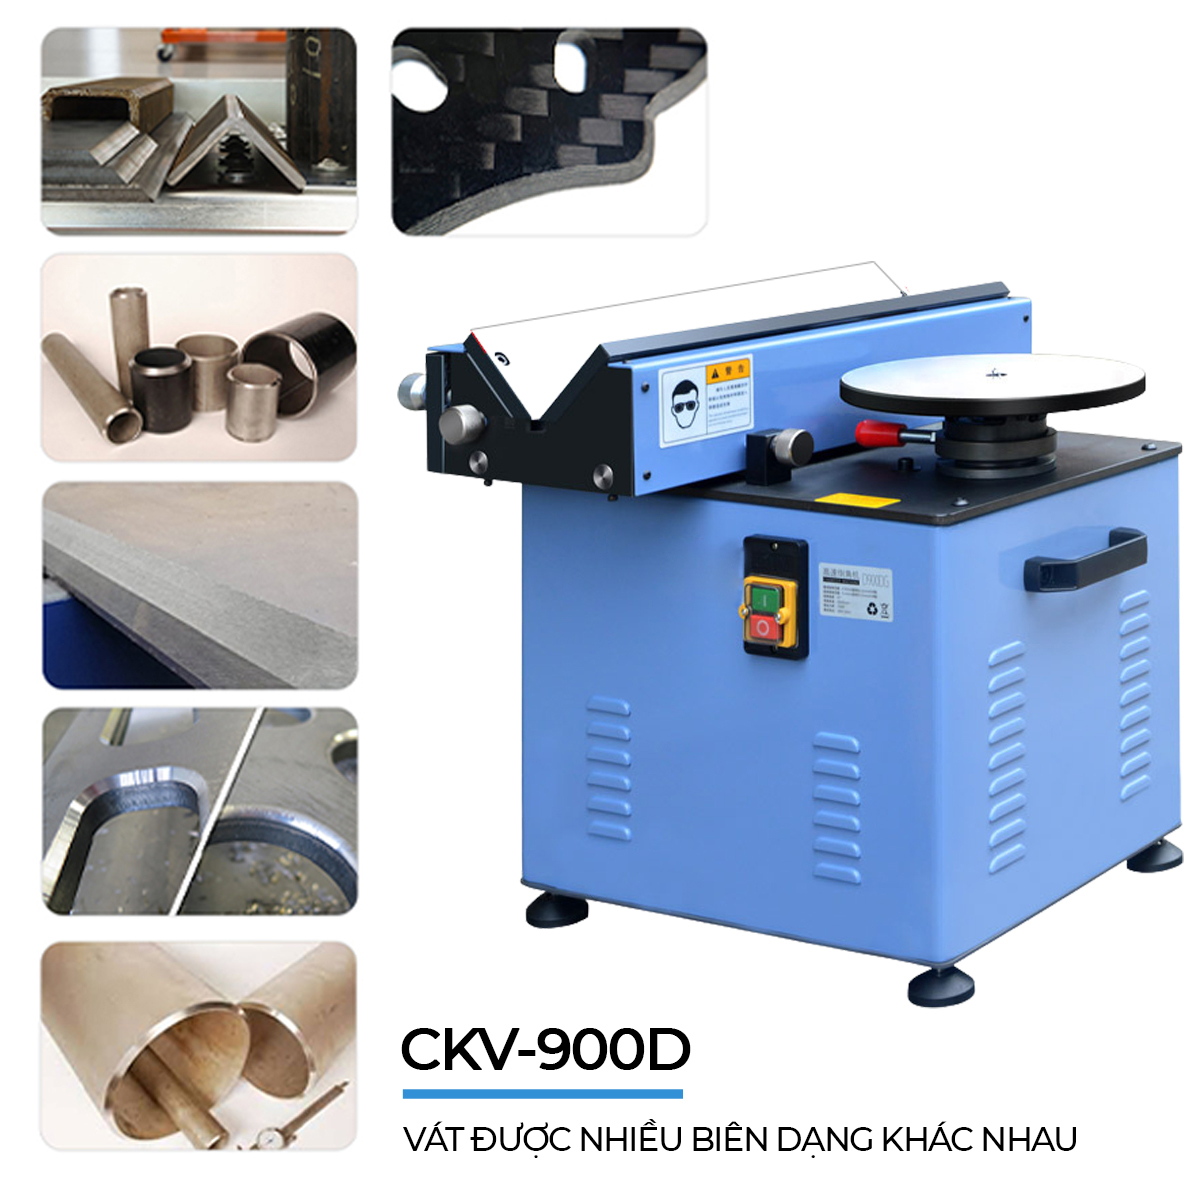 CKV-900D cho phép vát được nhiều biên dạng khác nhau